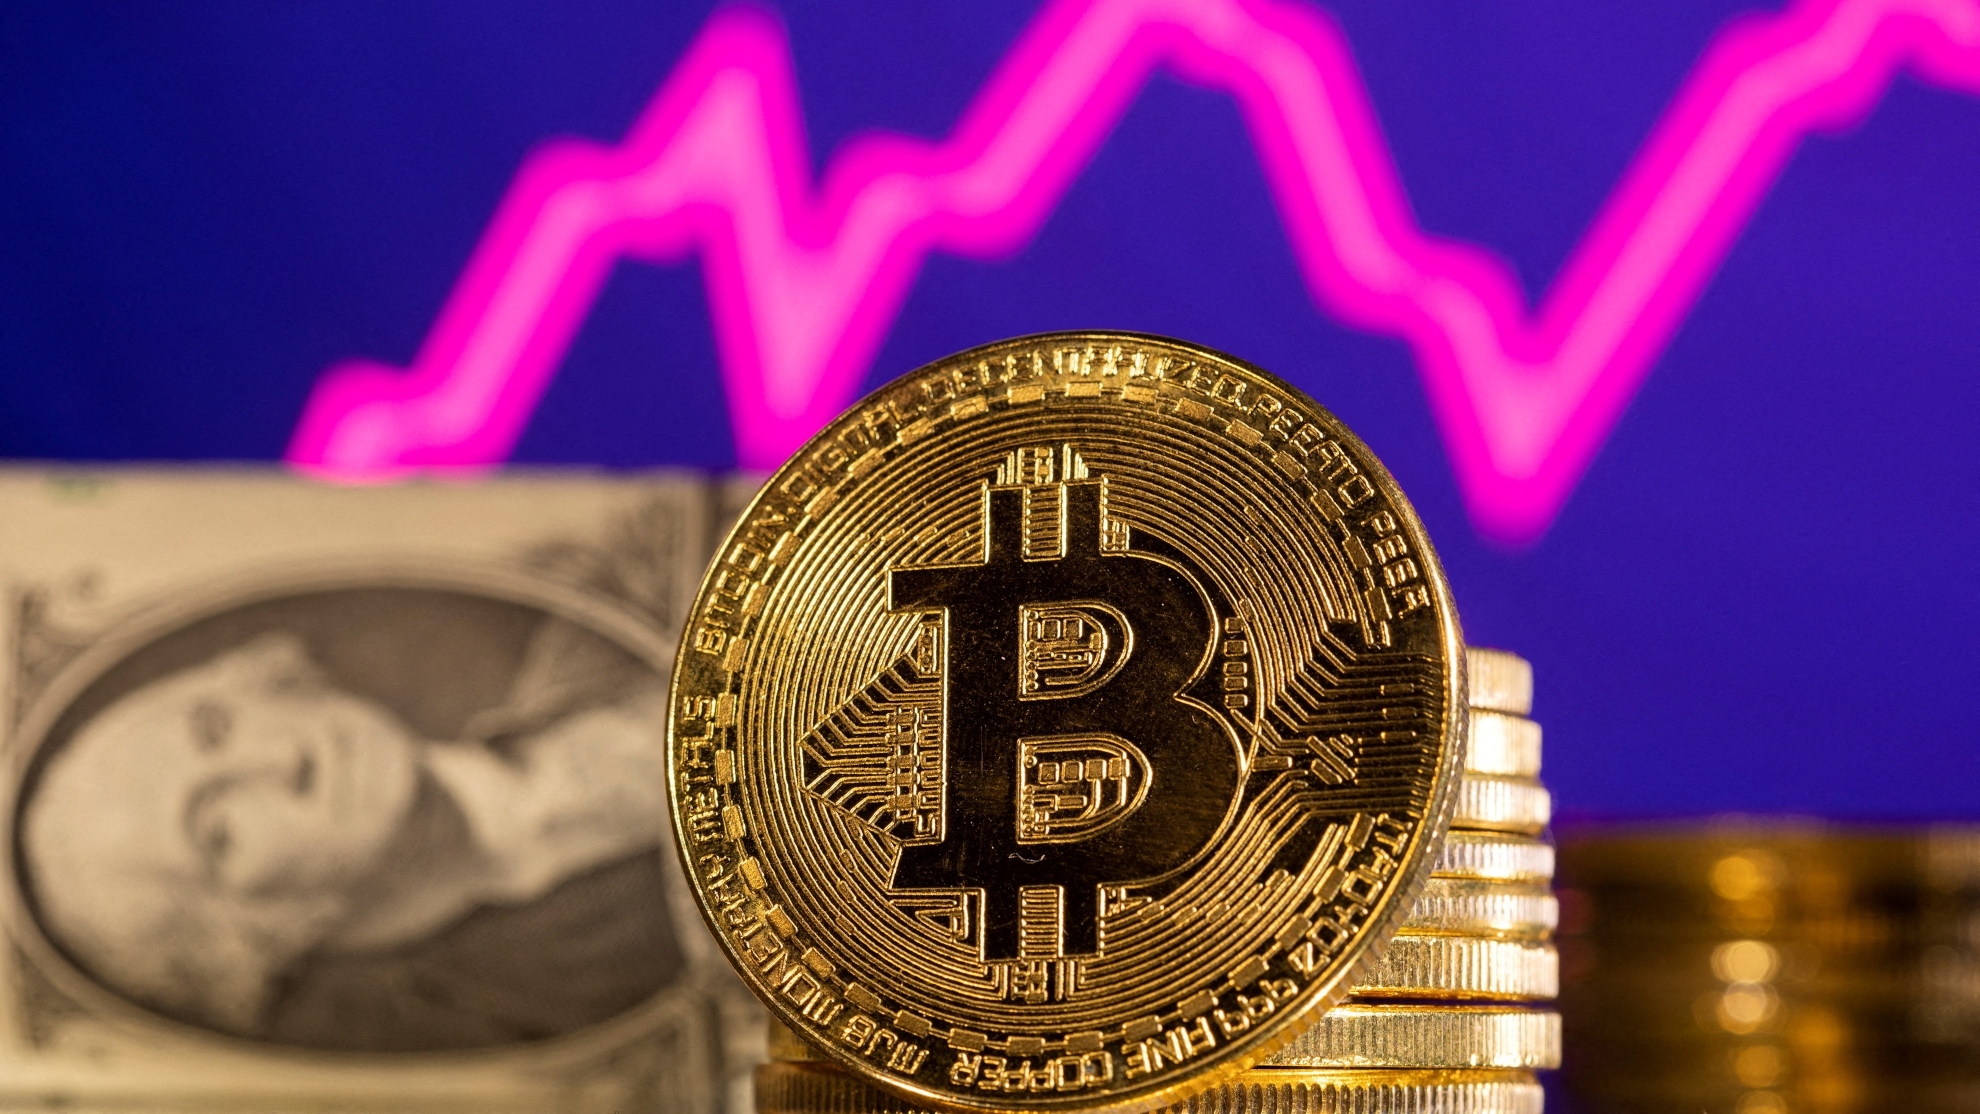 Cfd broker bitcoins, Bitcoin befektetési platform | Nézze meg a legjobb platformokat